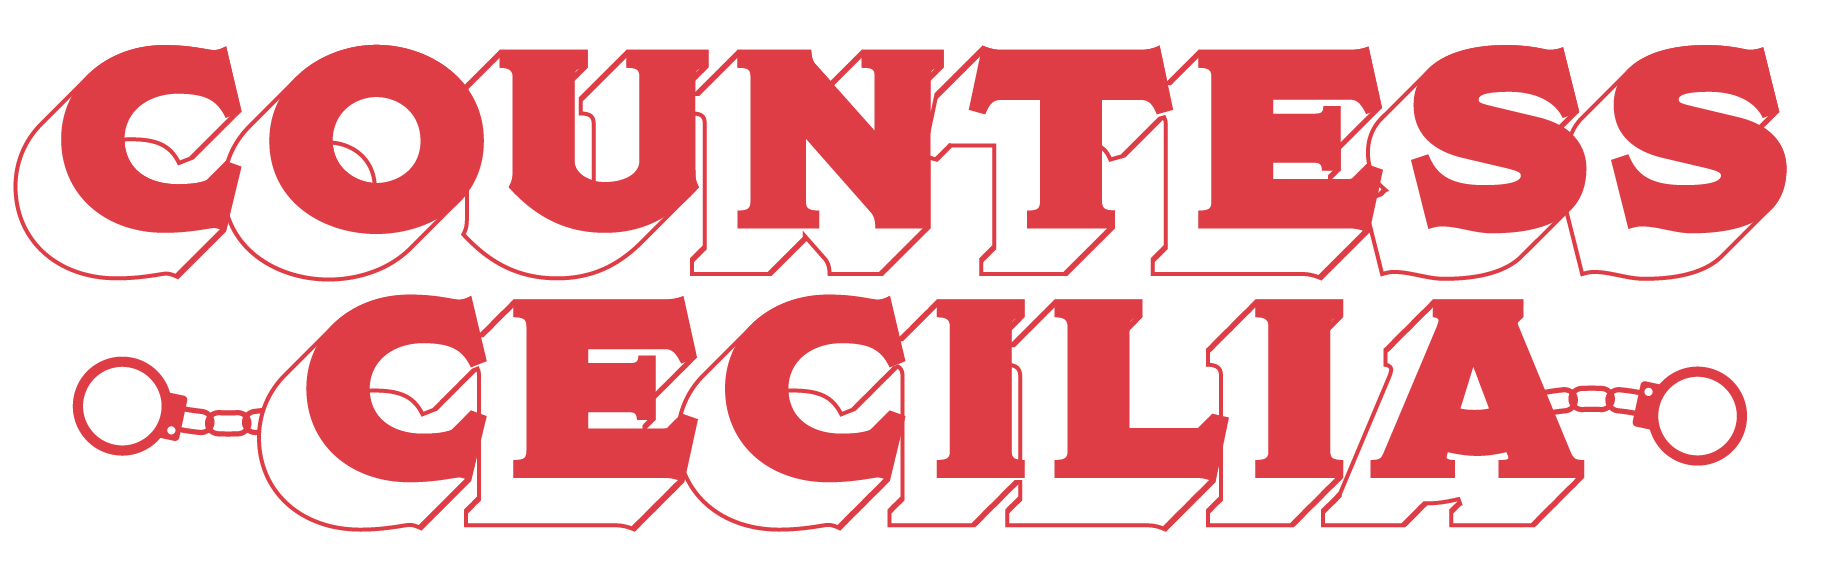 Countess Cecilia Logo. Pro Dominatrix and BDSM Dungeon in Cincinnati.